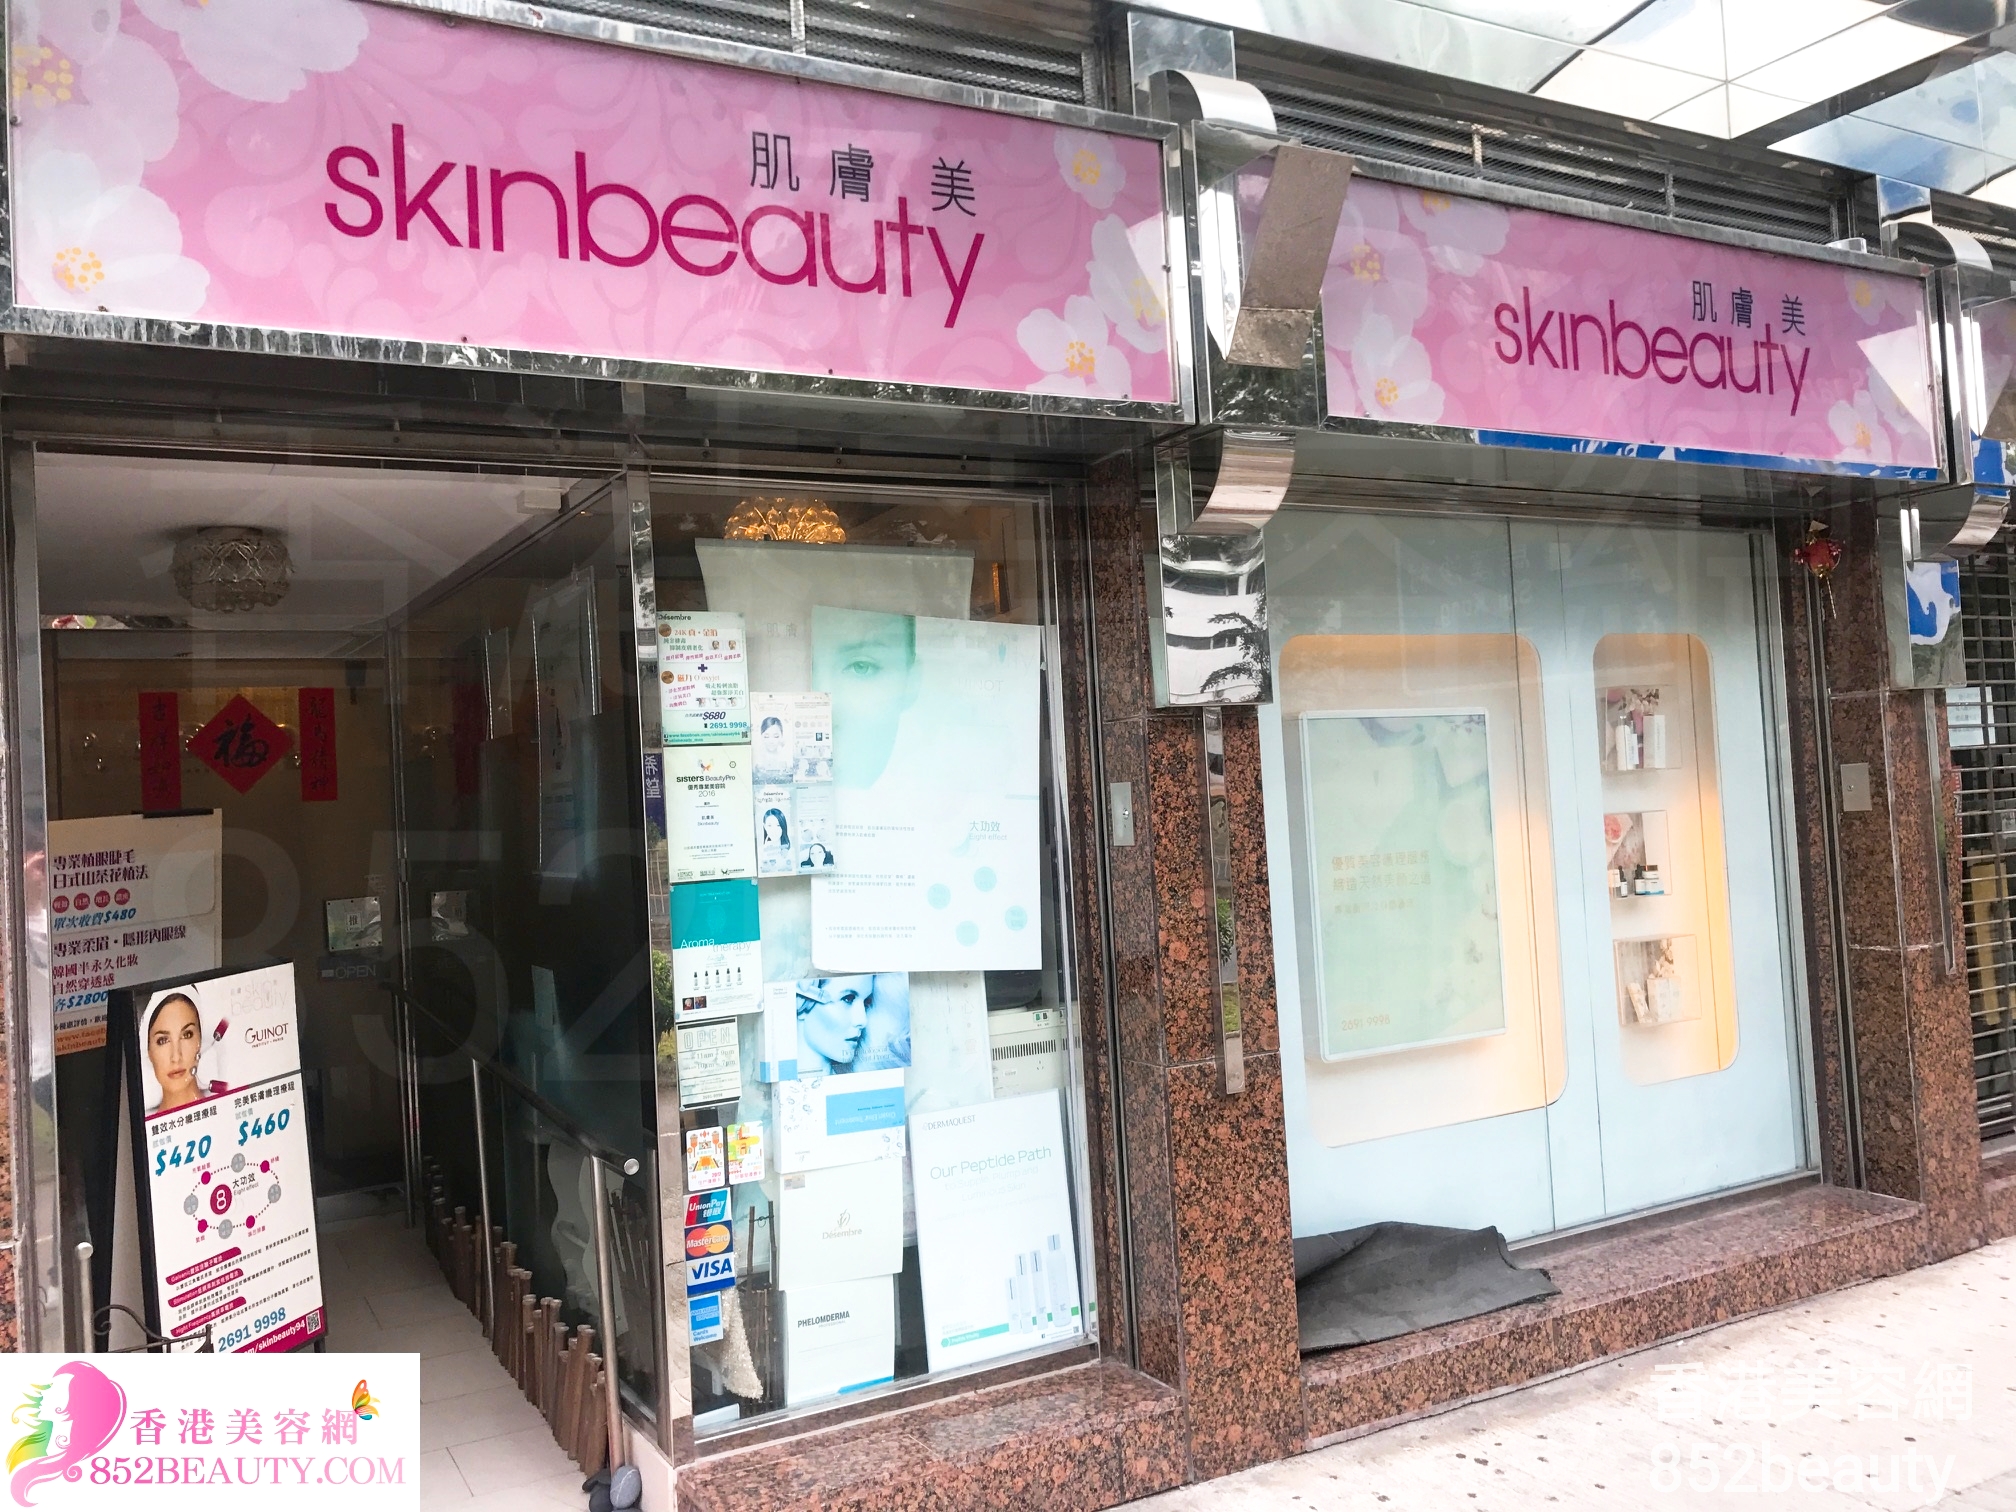 美容院 Beauty Salon: Skinbeauty 肌膚美 (馬鞍山店)